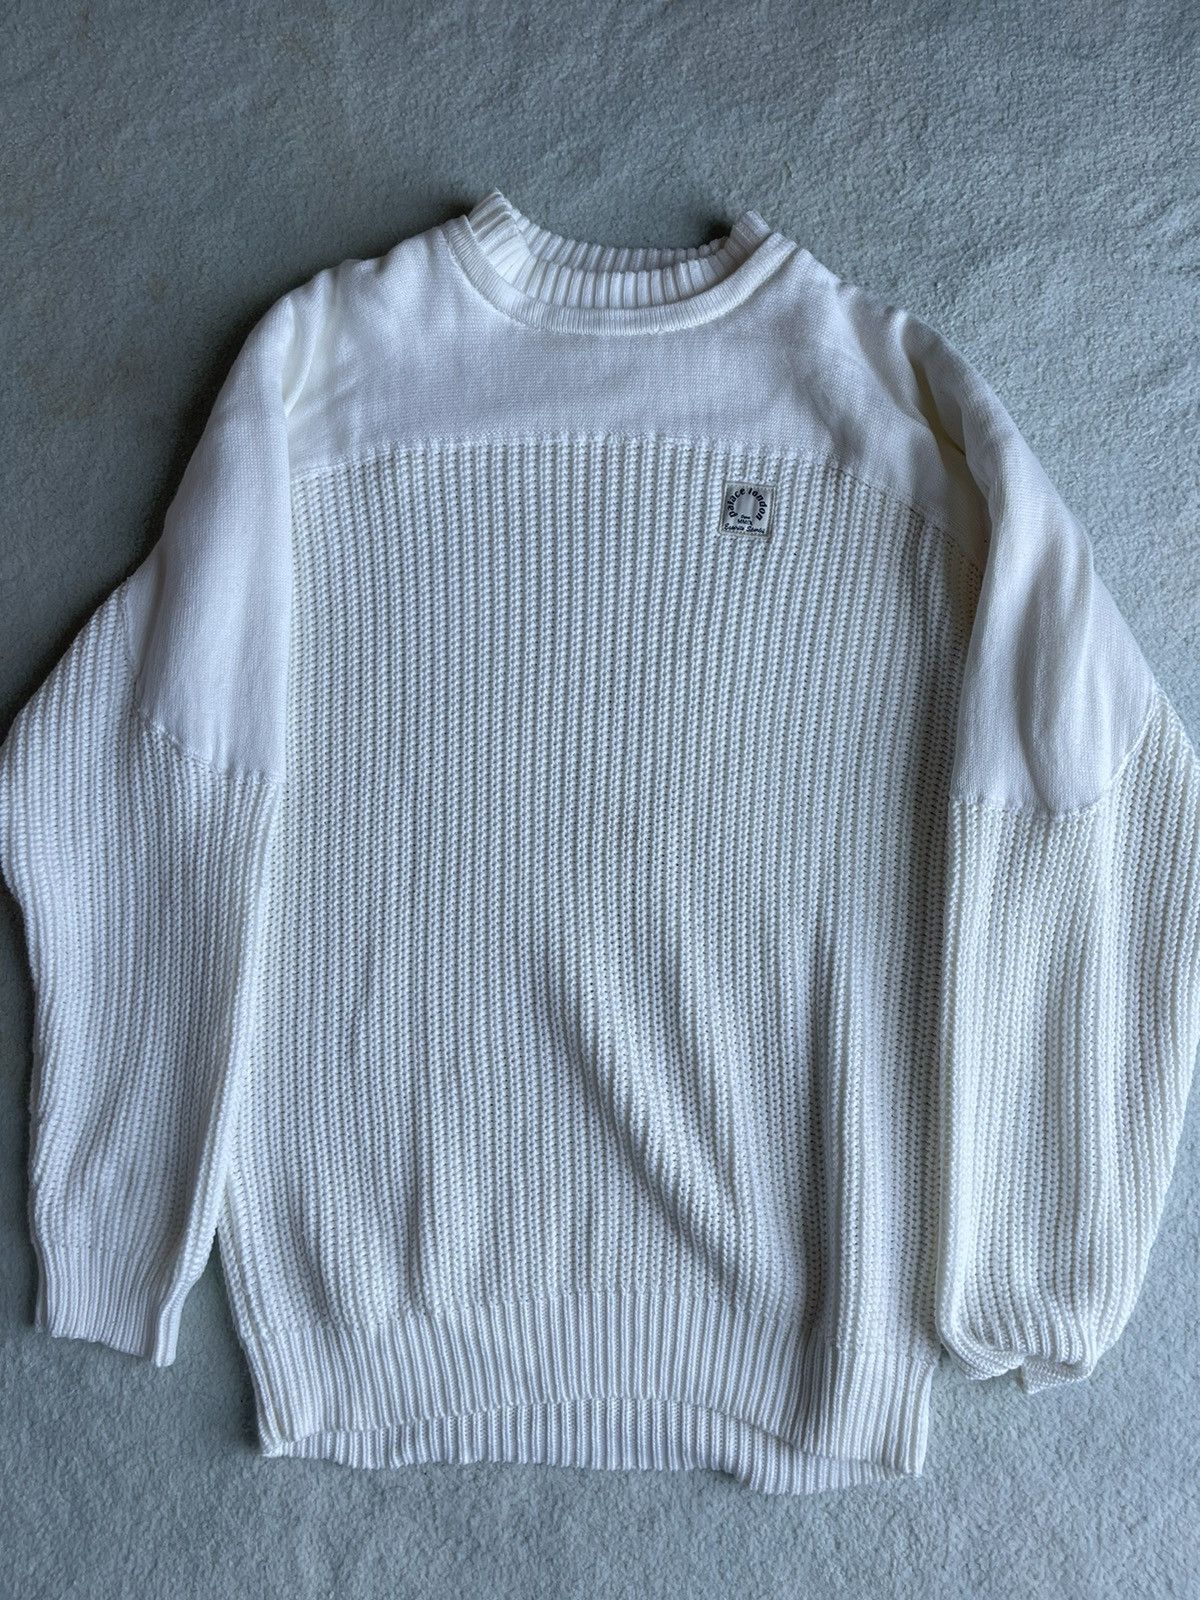 Palace Palace Sweater Size US M / EU 48-50 / 2 - 1 Preview